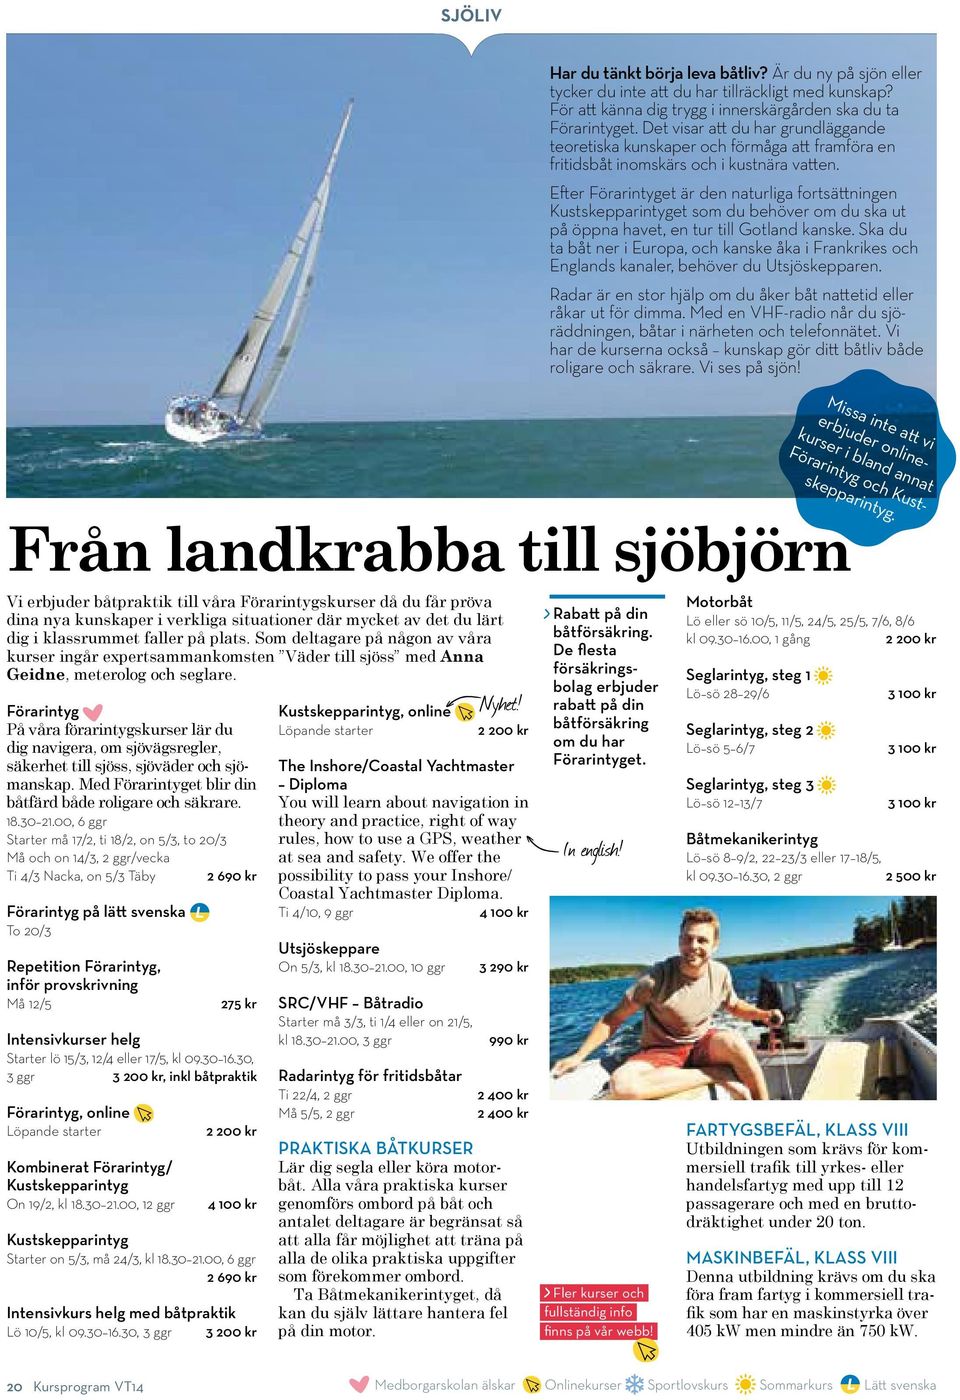 Efter Förarintyget är den naturliga fortsättningen Kustskepparintyget som du behöver om du ska ut på öppna havet, en tur till Gotland kanske.